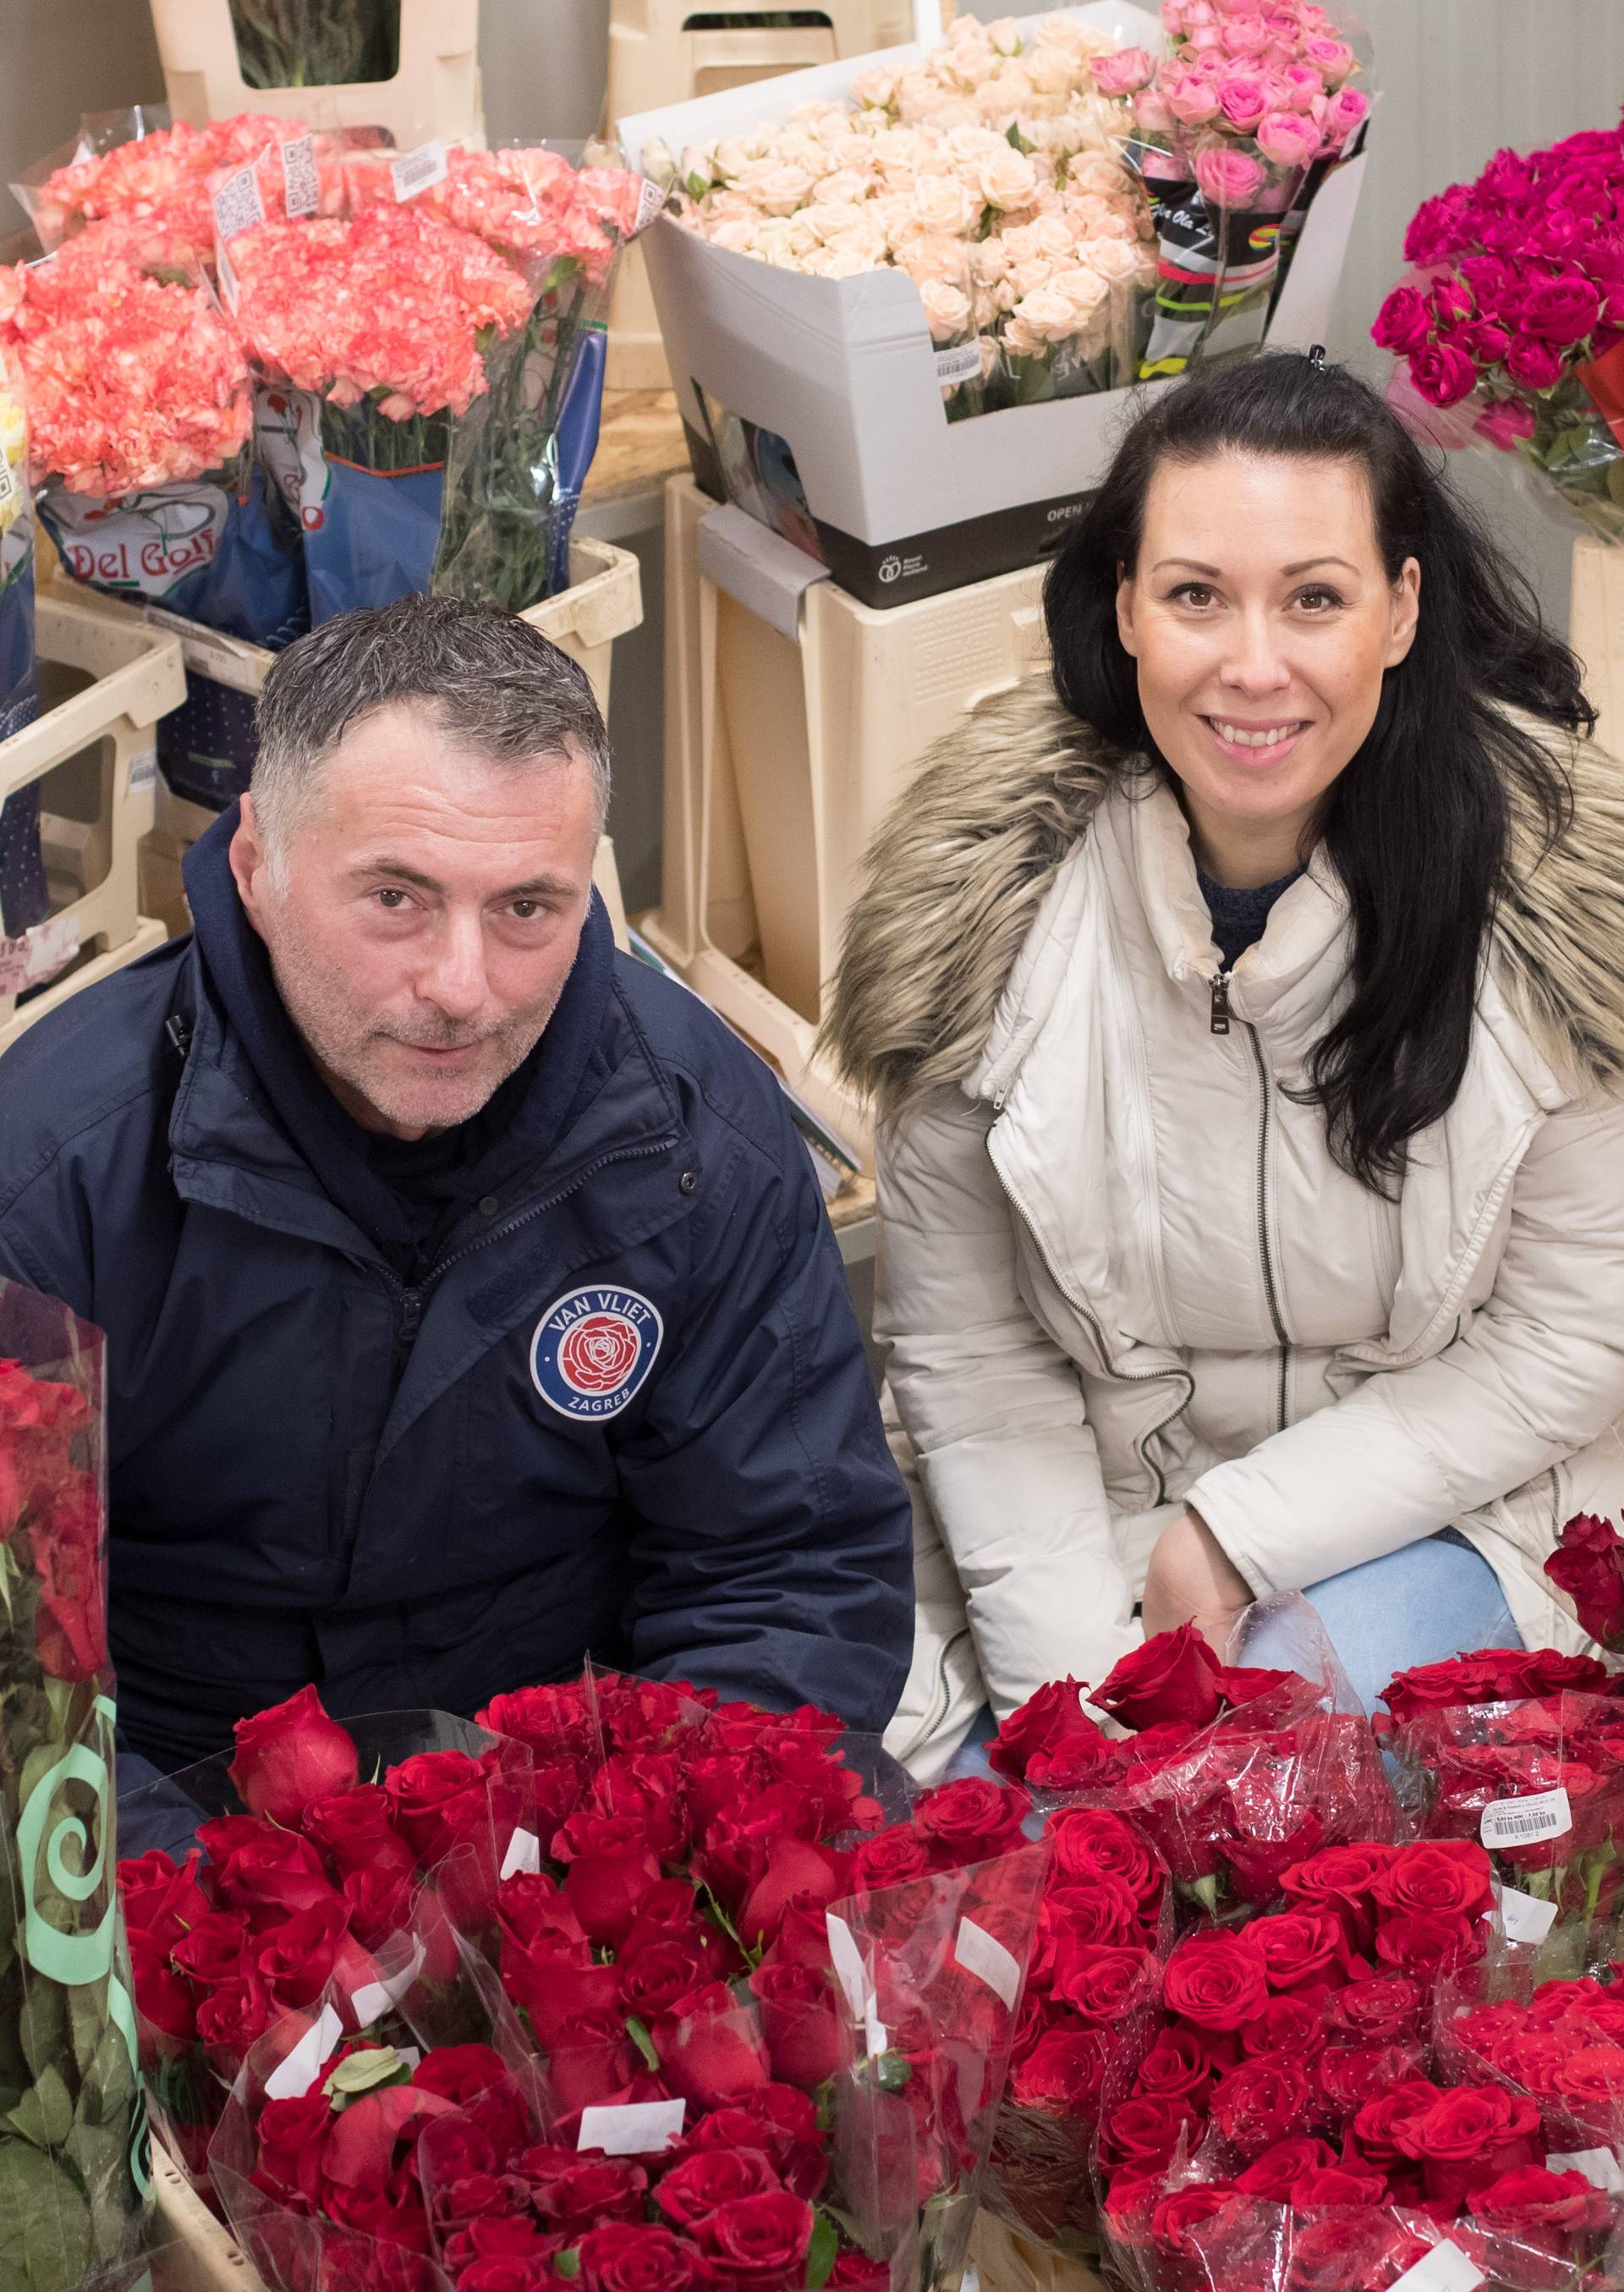 'Naše ruže dobije svaka treća Hrvatica. Crvene su prvi izbor'